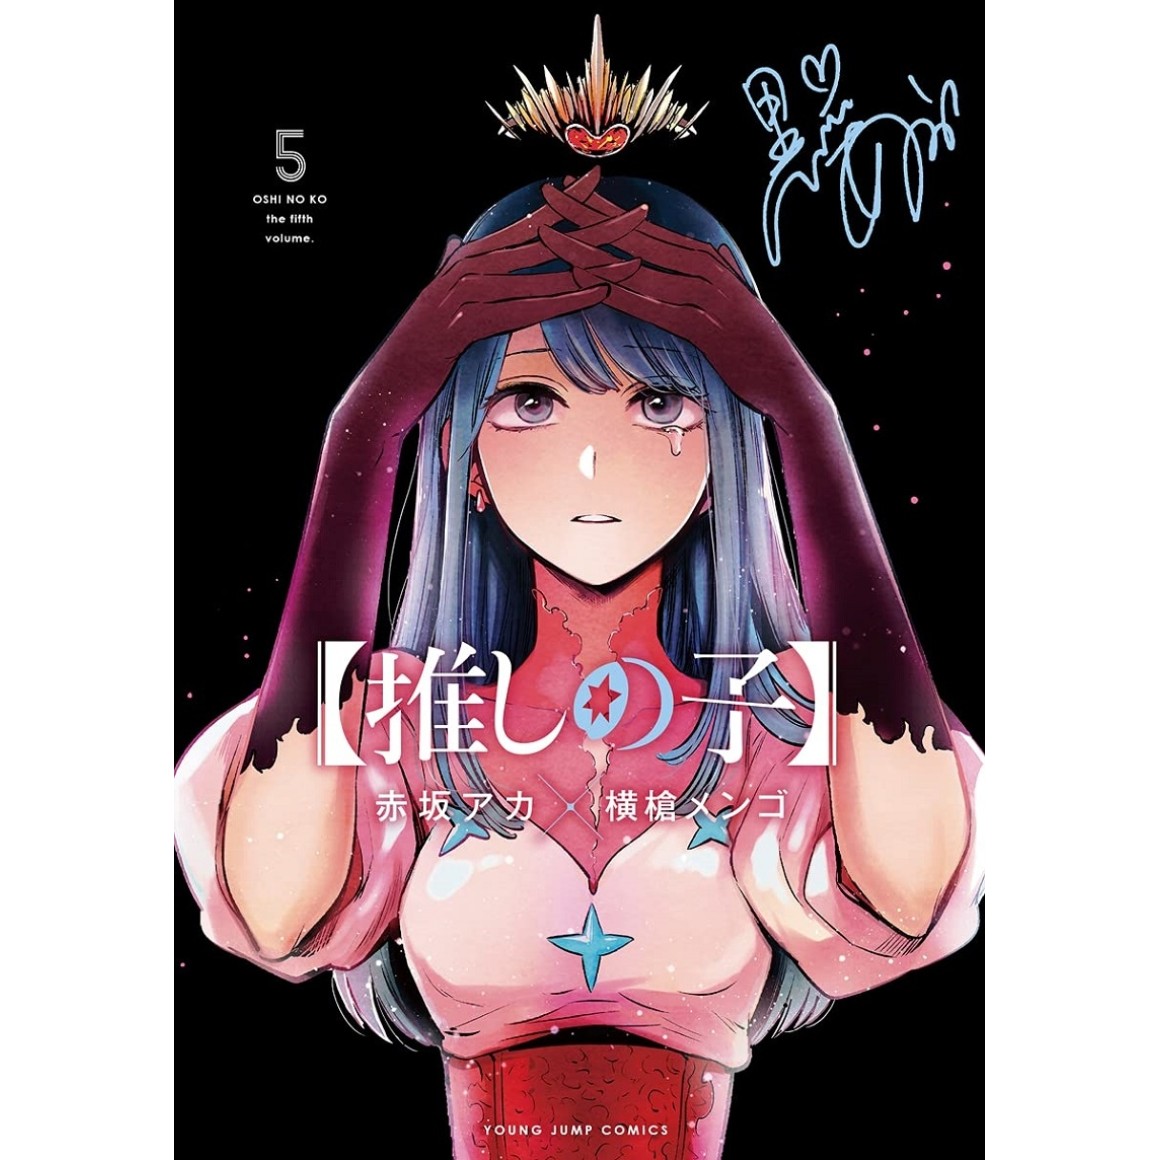 Oshi No Ko Manga Volume 3